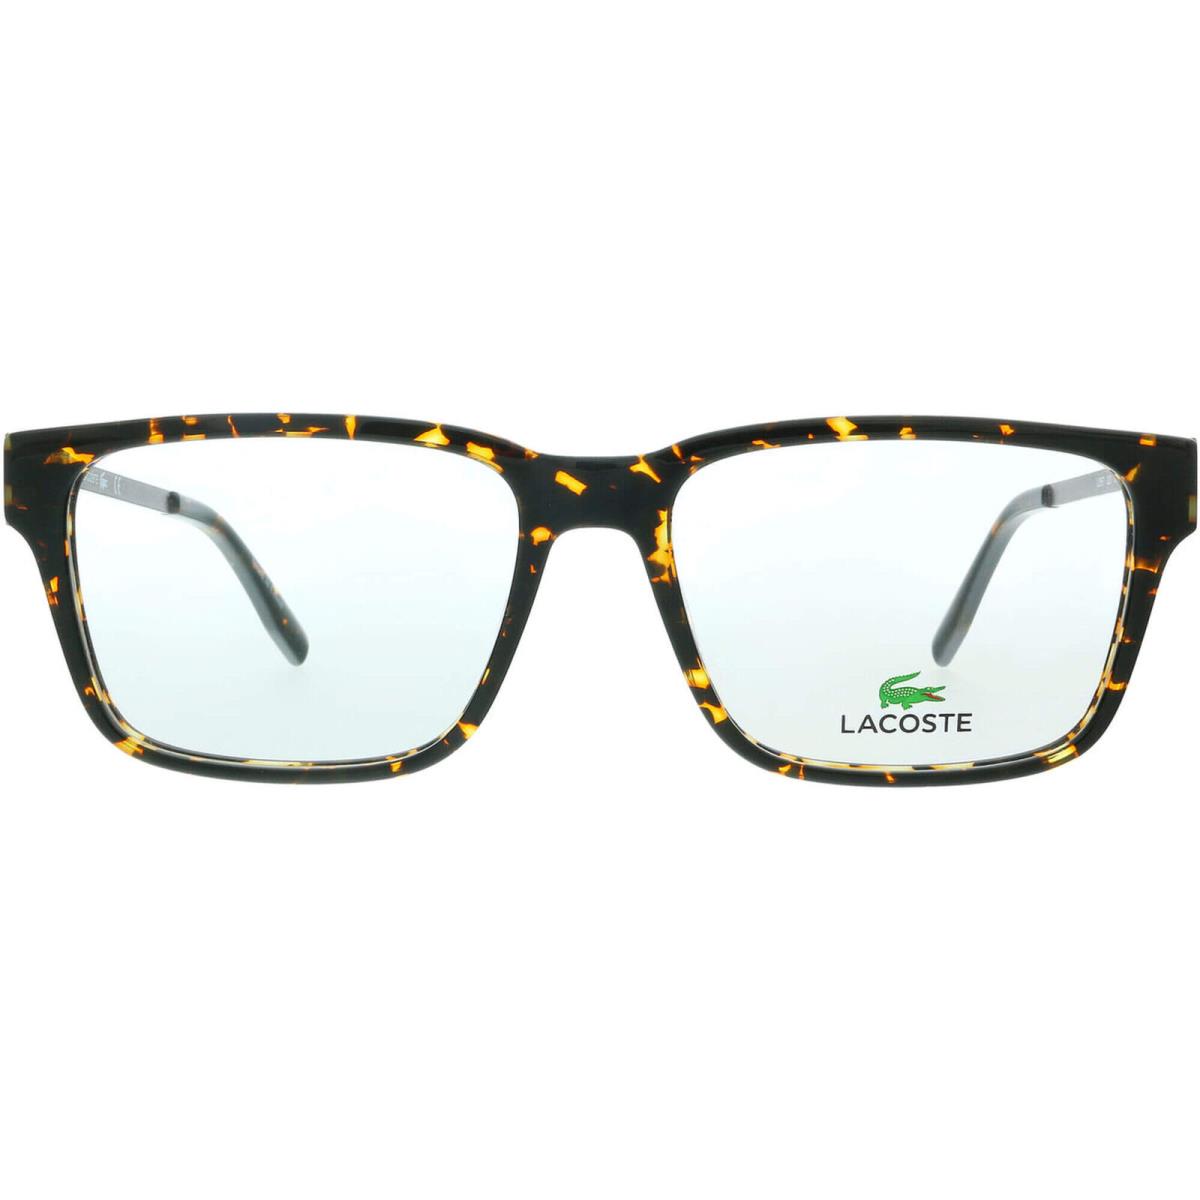 Lacoste Men`s Eyeglasses Dk Havana Plastic Full-rim Frame Lacoste L2867 220